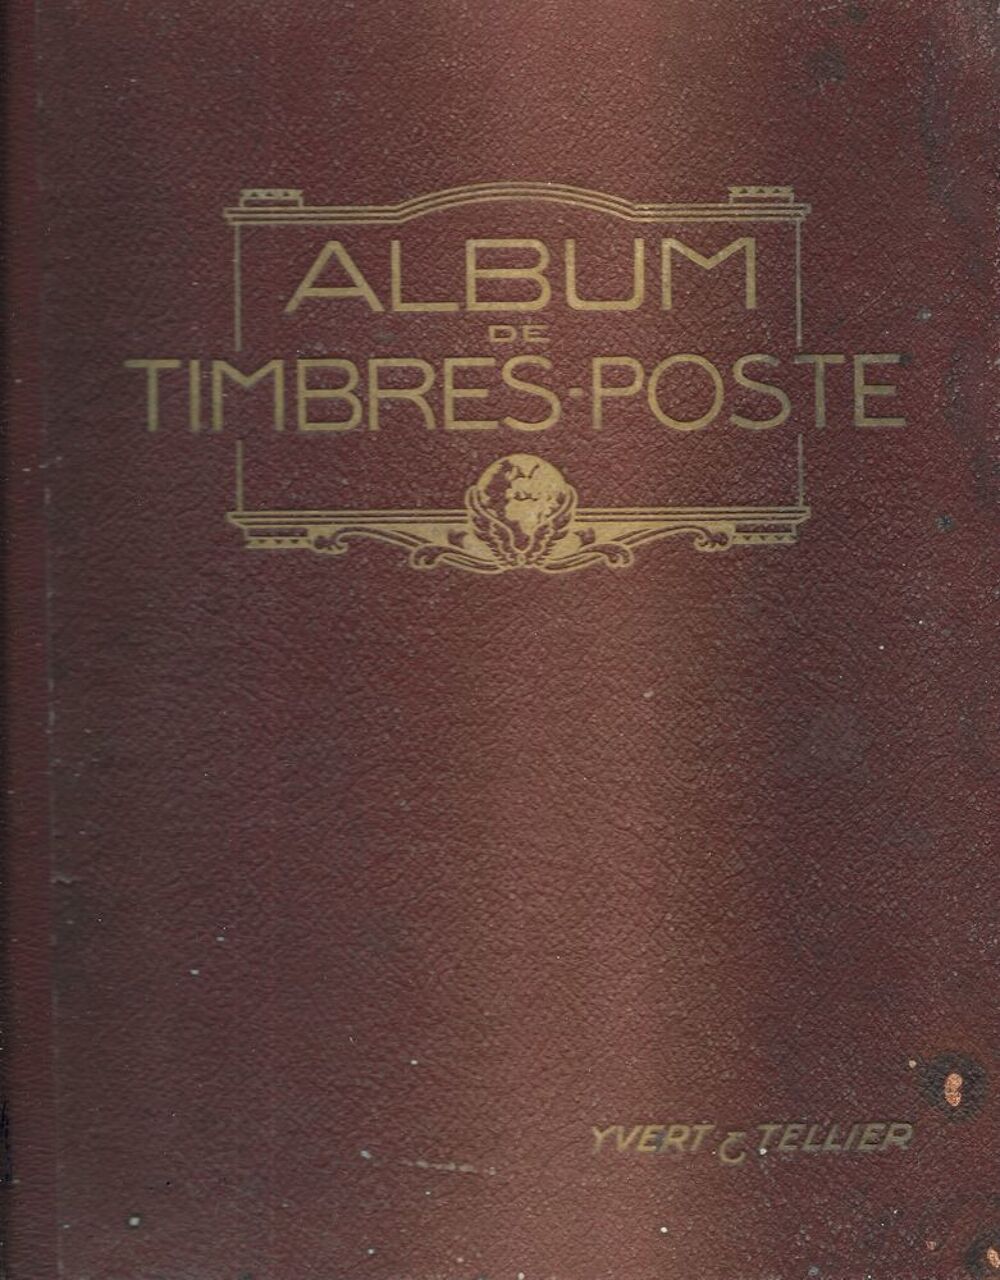 Album de timbres poste 1926 par YVERT et TELLIER 